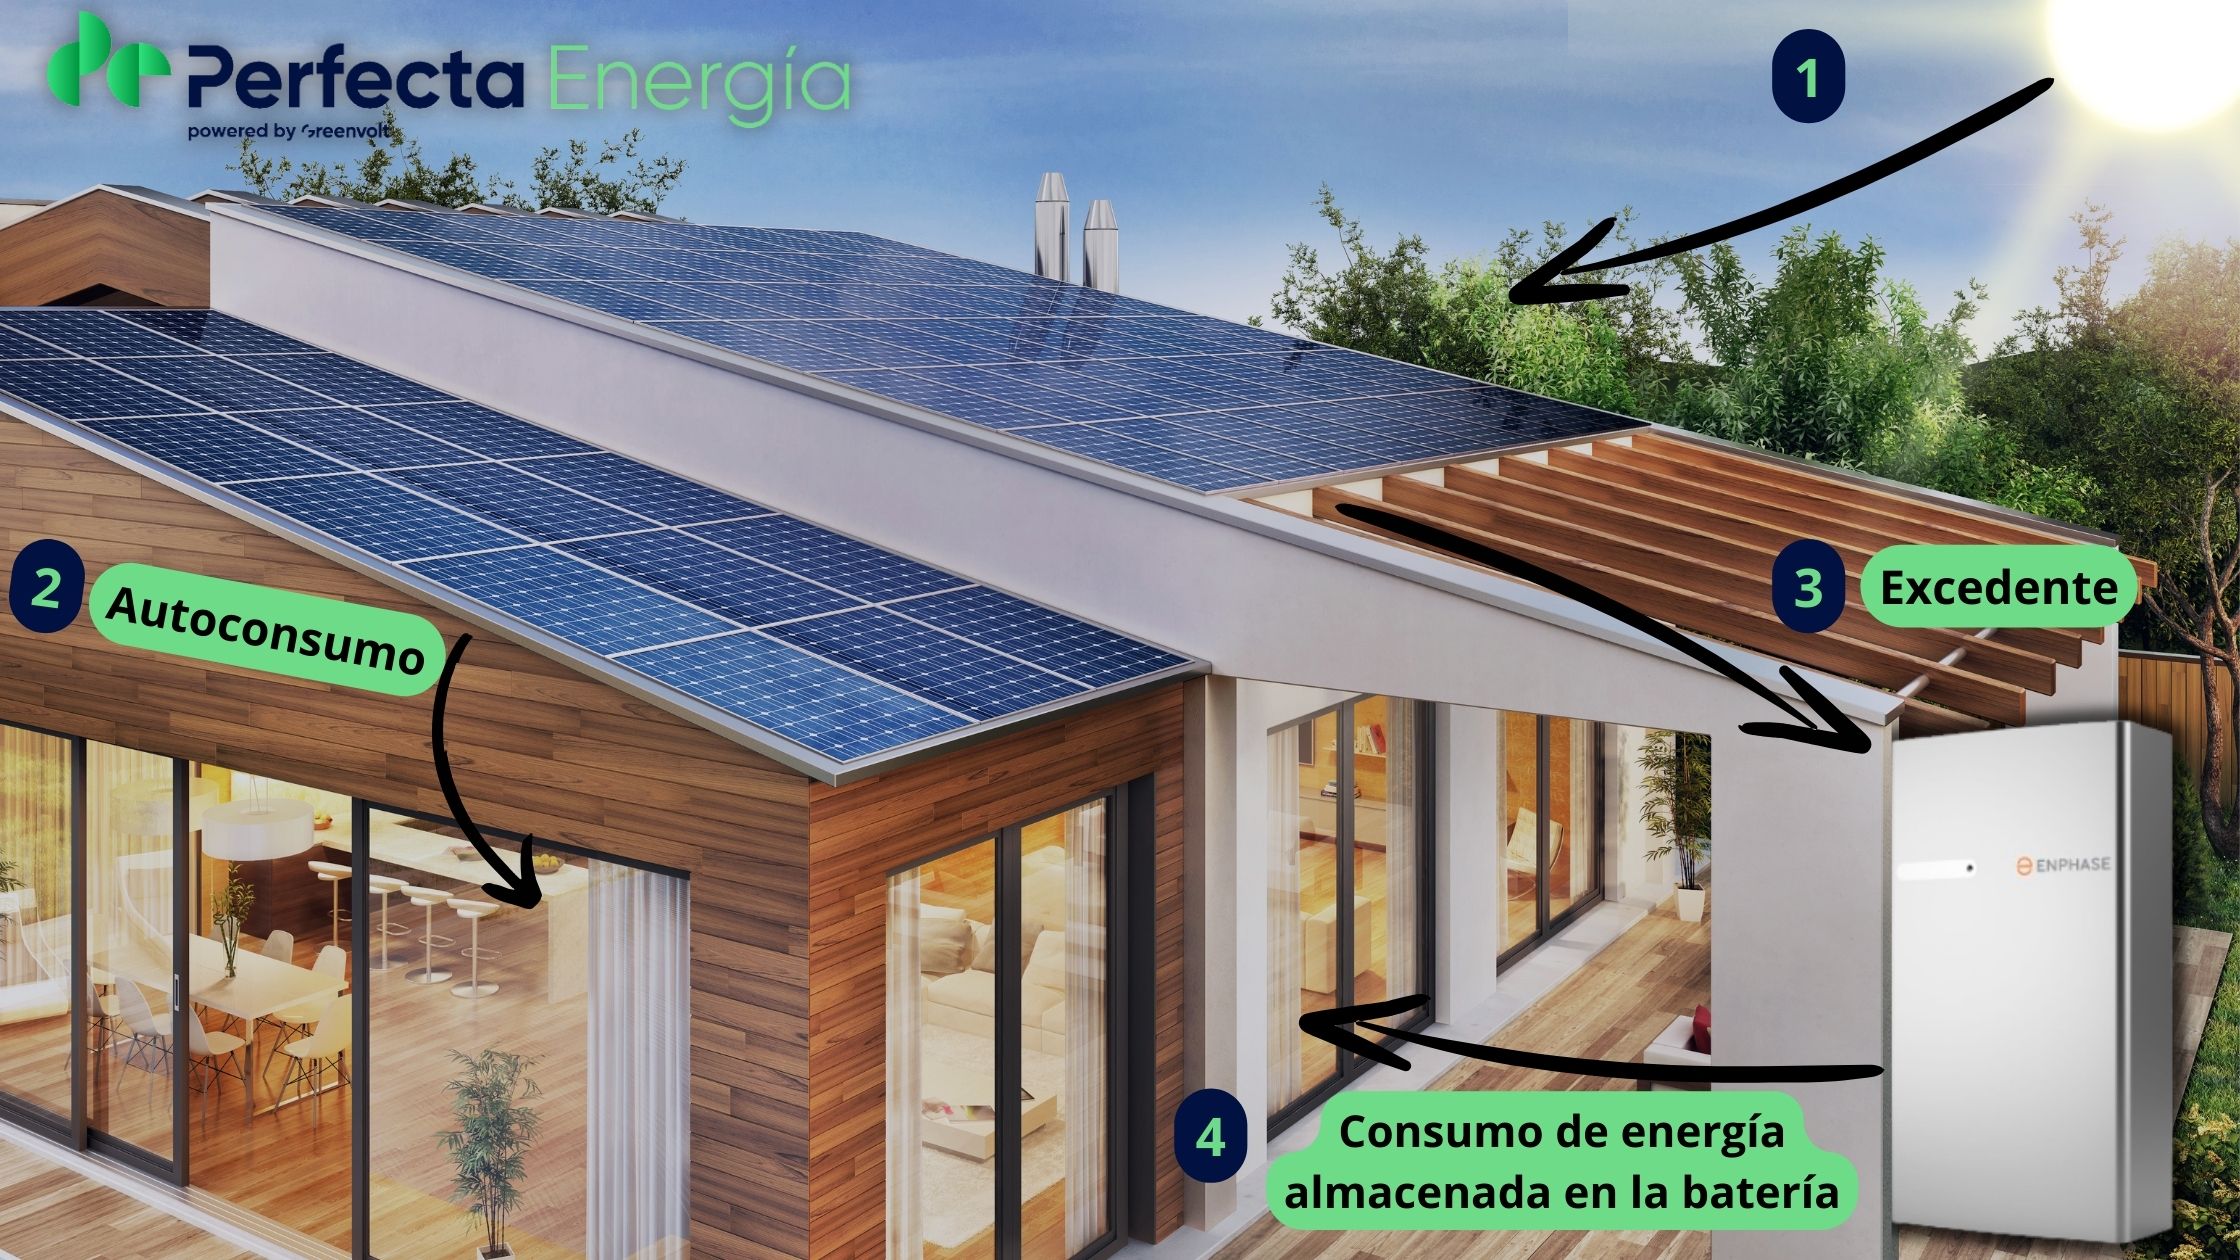 cómo funcionan las baterías solares esquema del funcionamiento de placas solares con batería mostrando una casa iluminada gracias a las baterías de perfecta energía